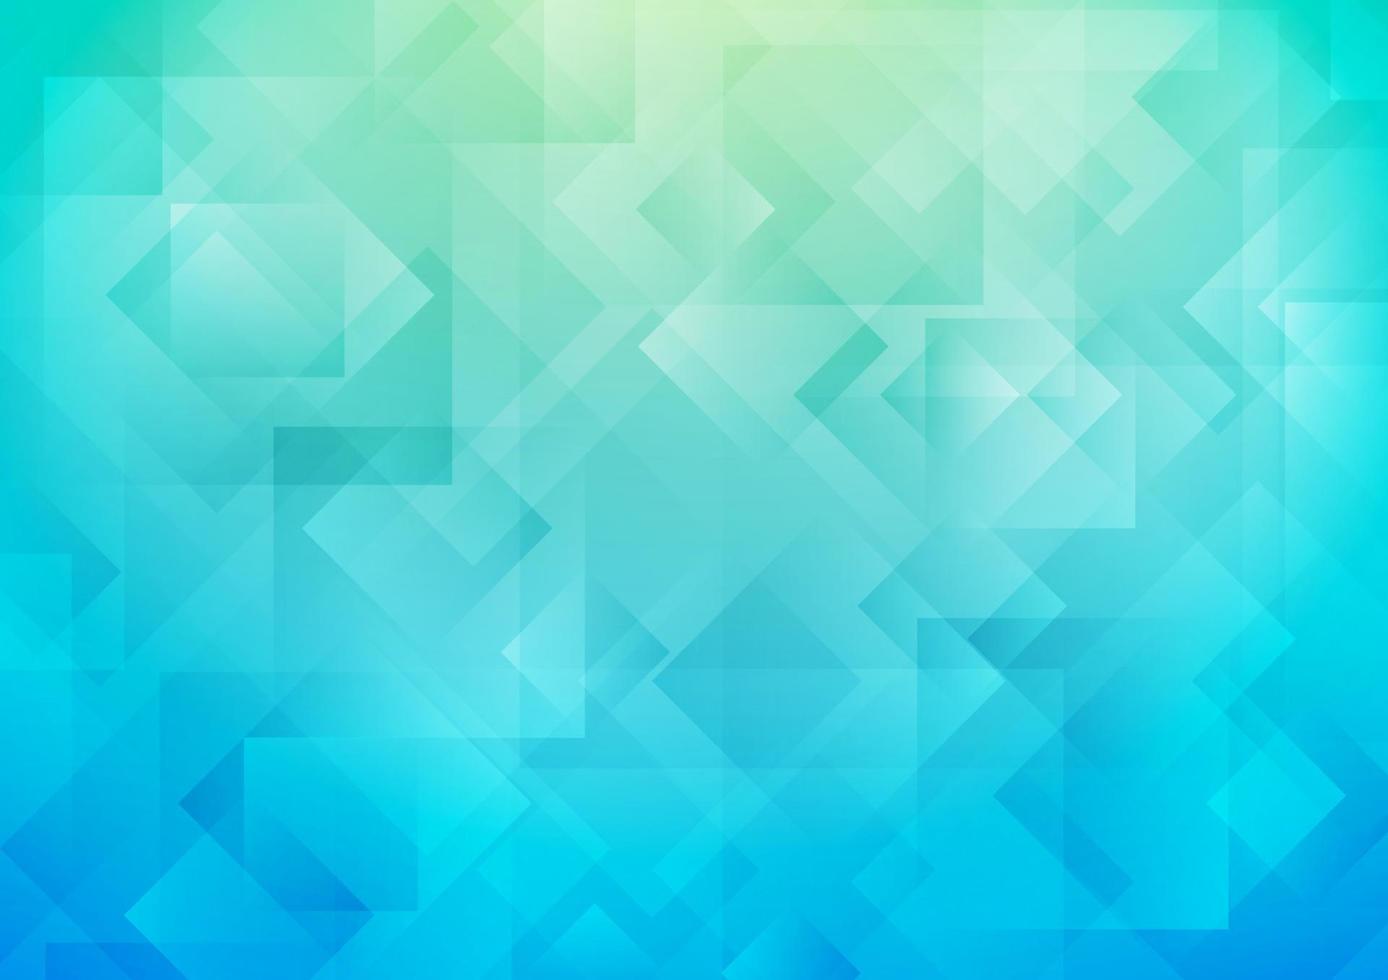 överlappande fyrkantiga former på blå abstrakt bakgrund med gradient. vektor illustration